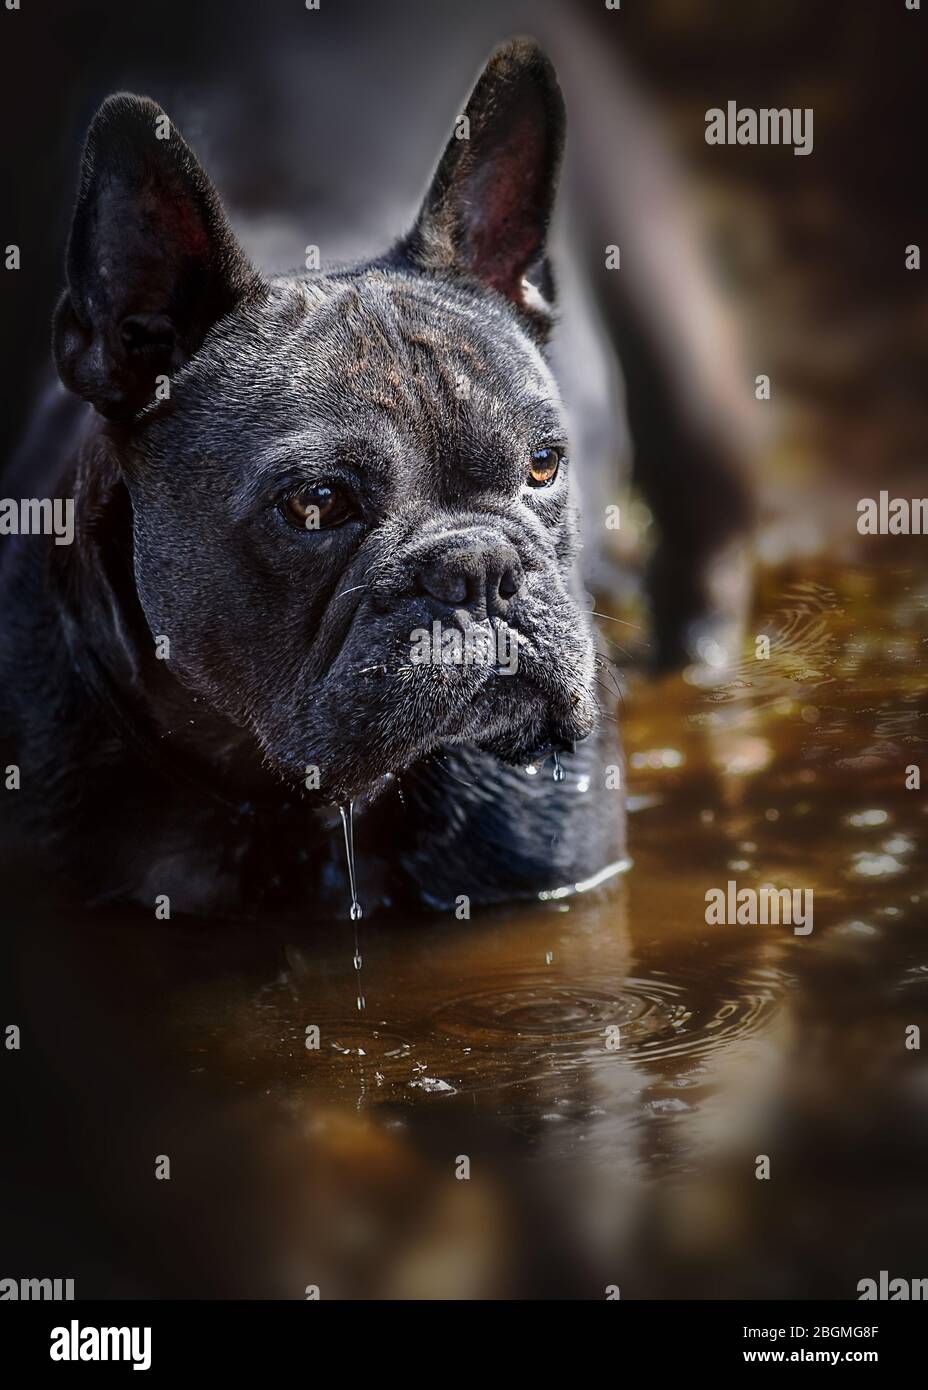 Vertikale blaue französisch Bulldogge Porträt stand in Teich Wasser mit warmen reichen natraul braunen Farben im Hintergrund Raum für Text-Overlay und Kopie Spa Stockfoto